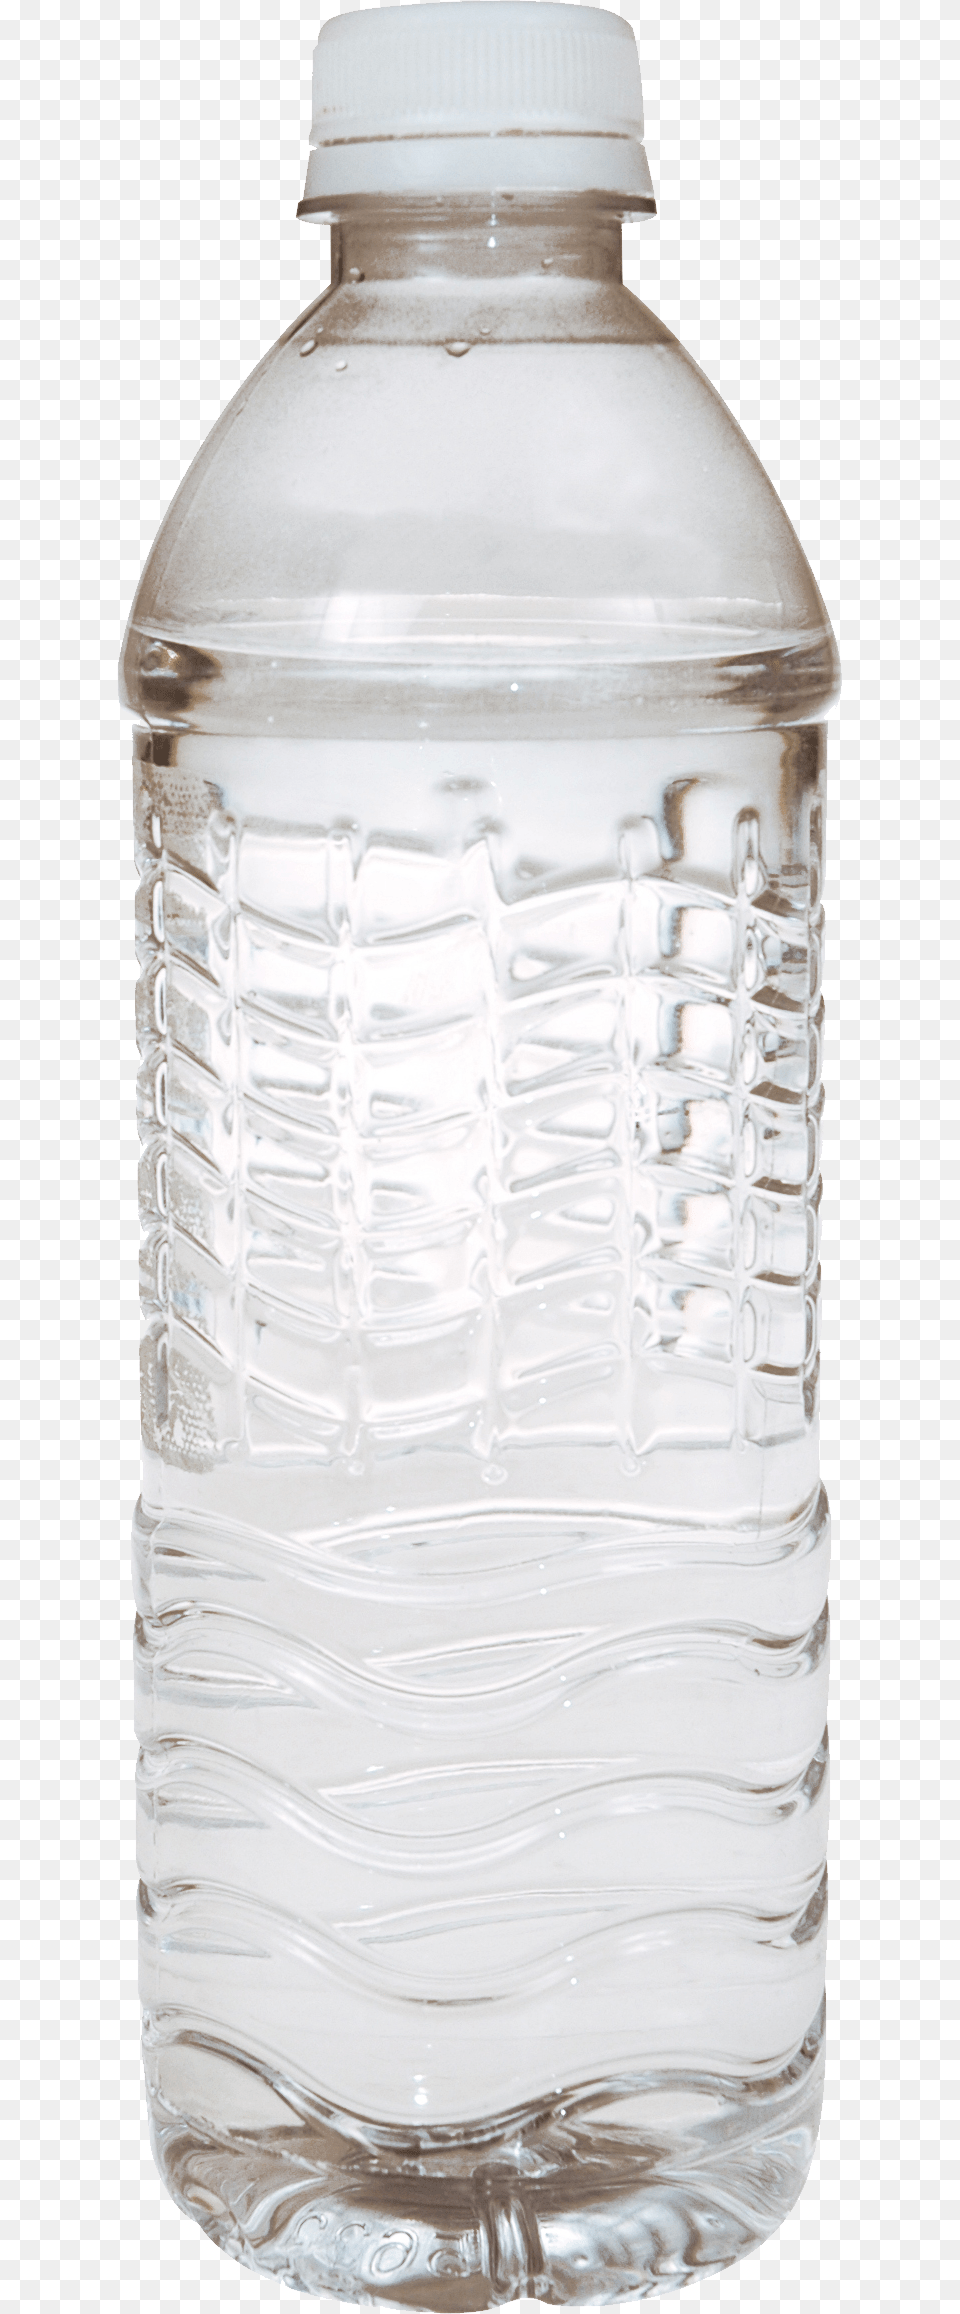 Water Bottle, Jar, Shaker, Water Bottle Free Png